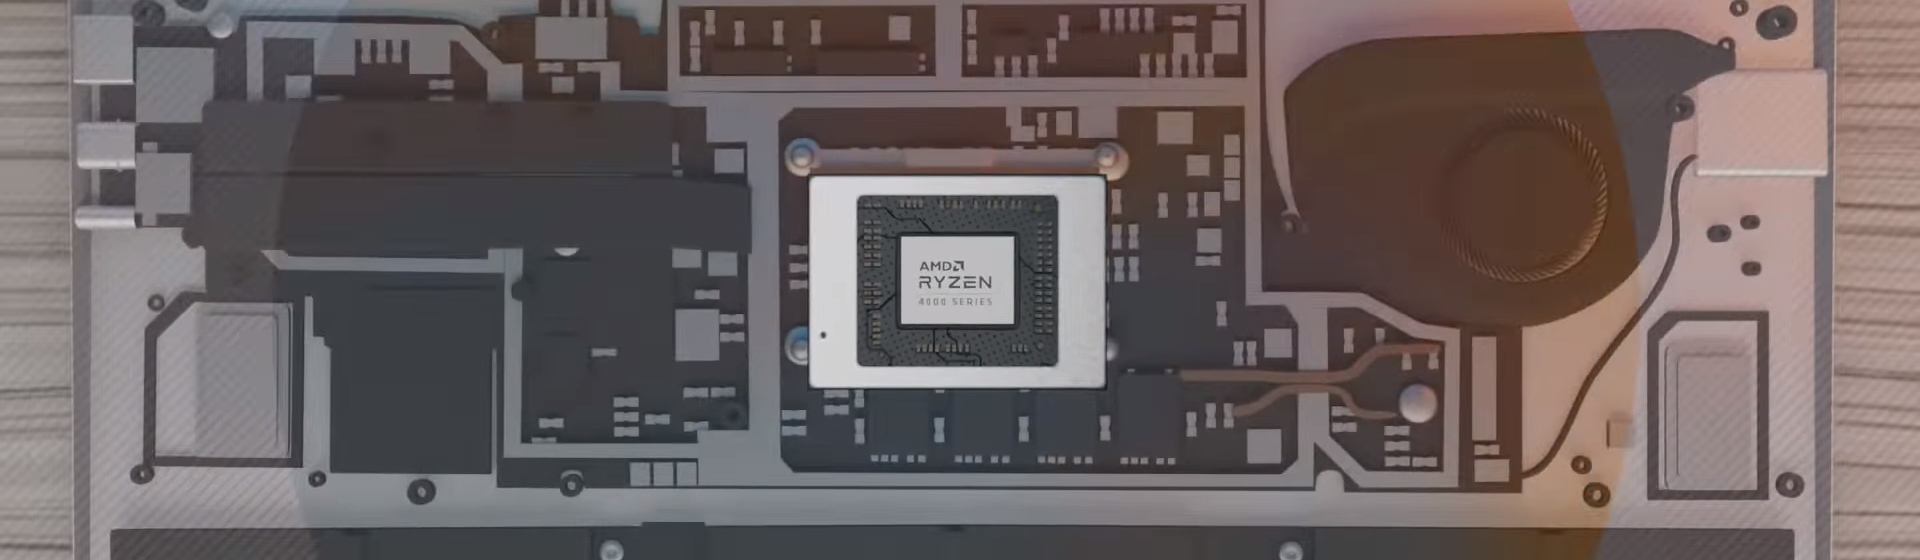 AMD công bố hai CPU Ryzen 9 4900H và 4900HS cho laptop